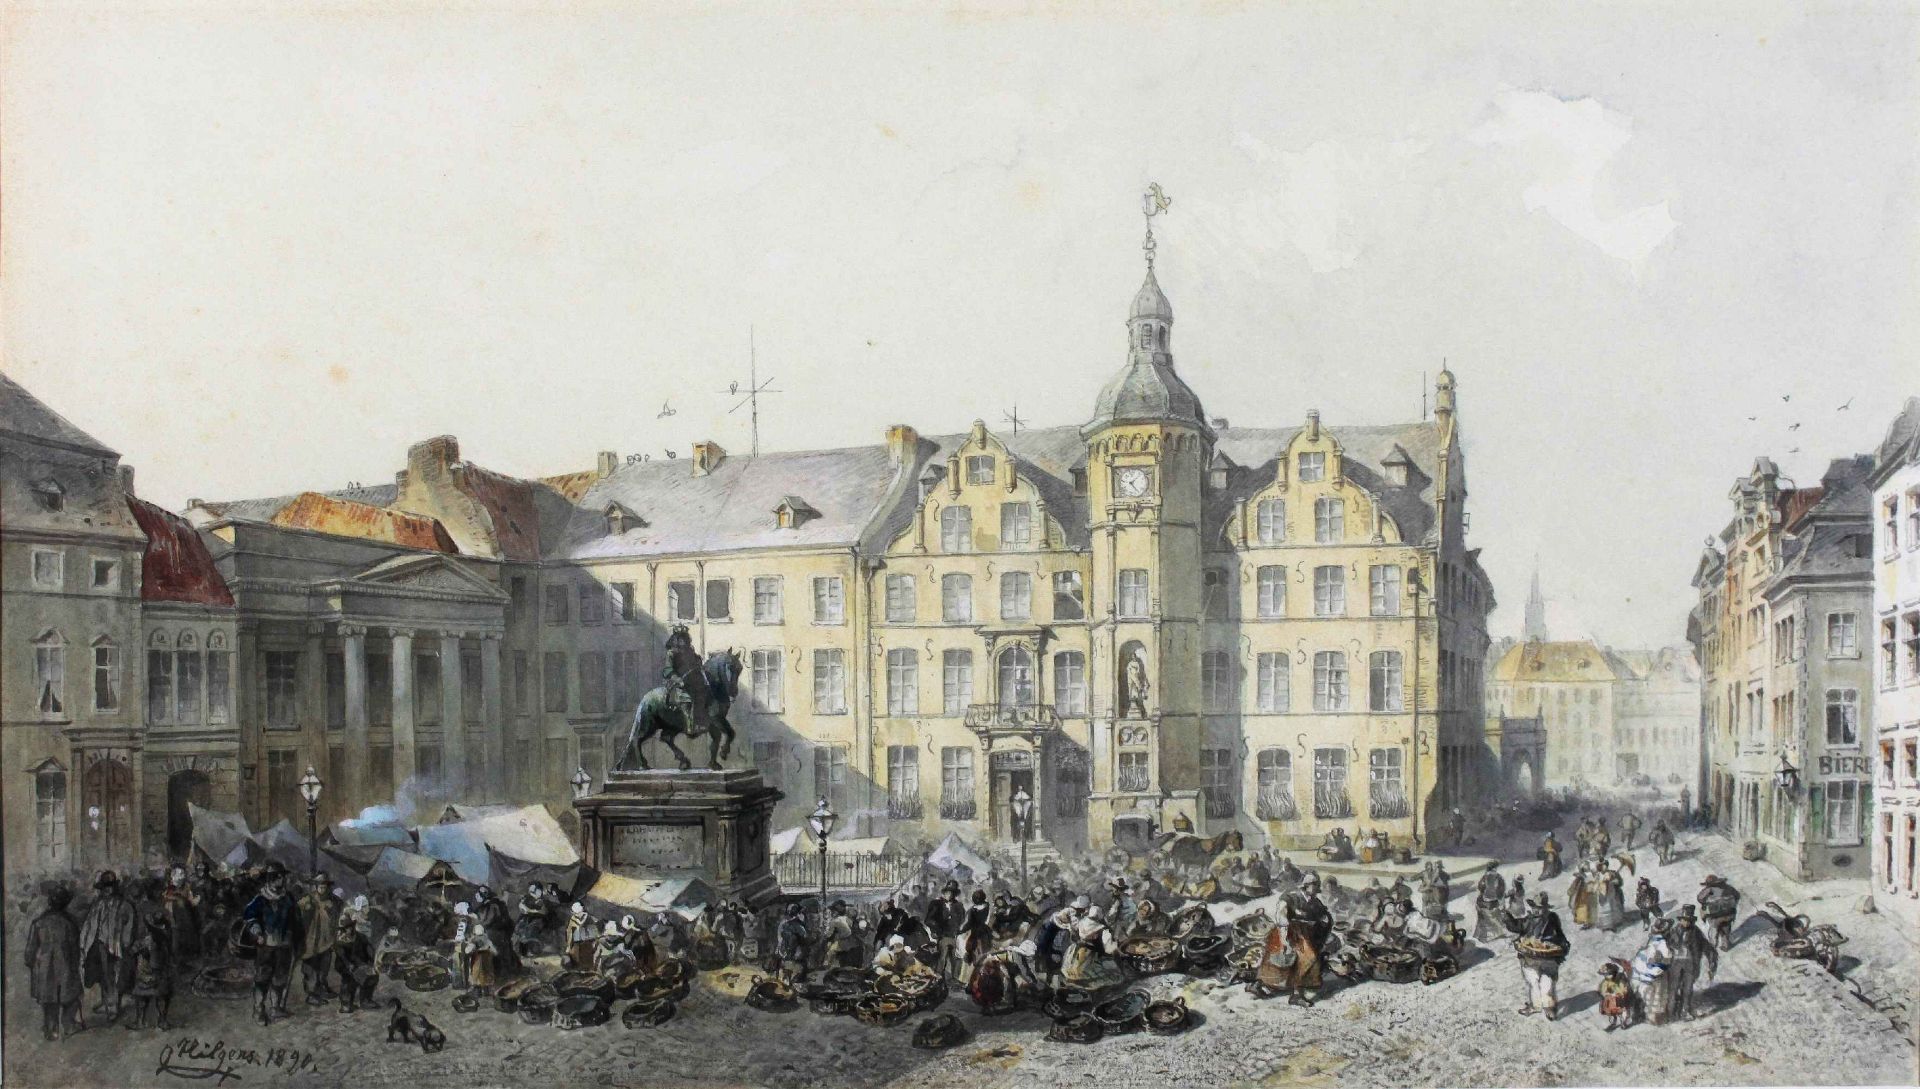 Düsseldorfer Künstler, verm. Karl Hilgers (1844 - 1925), Düsseldorfer Rathaus und Marktplatz, 18